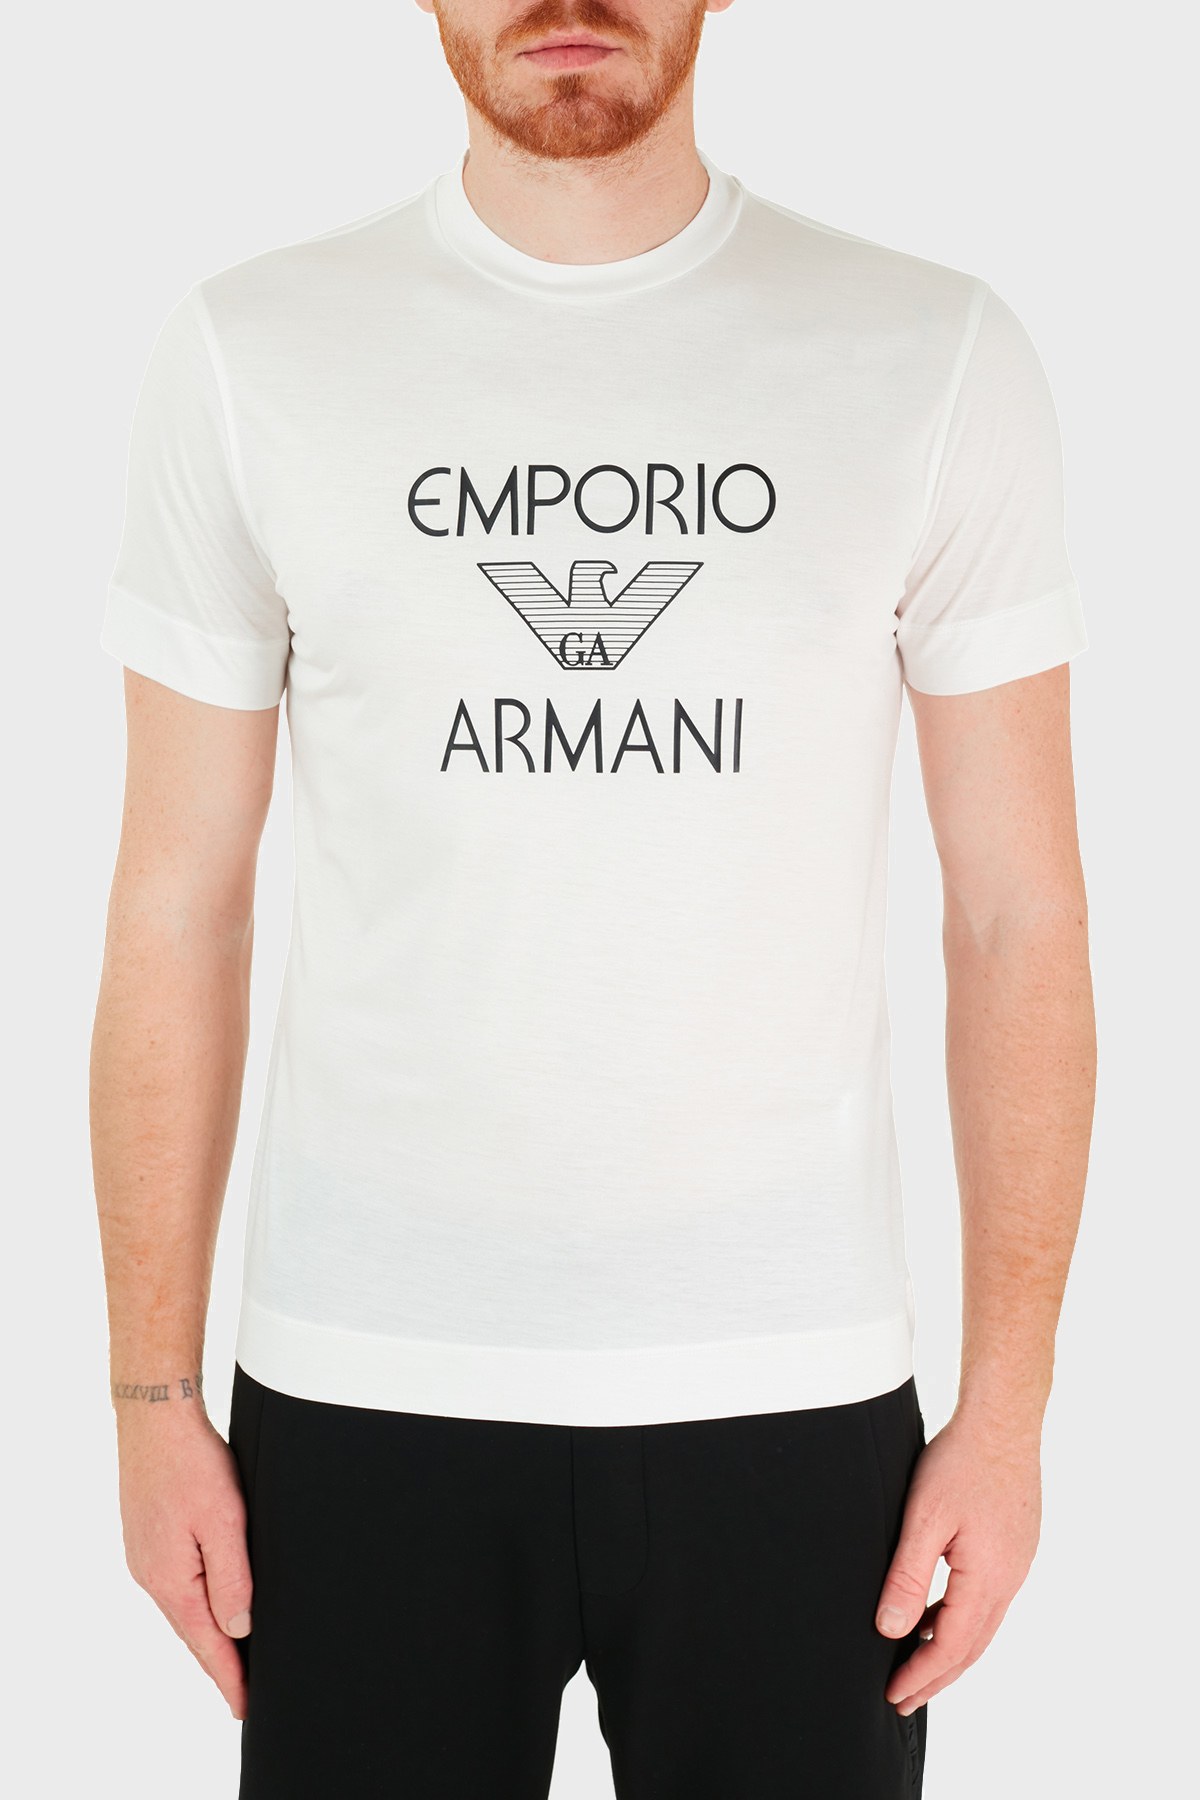 Emporio Armani Logo Baskılı Bisiklet Yaka Erkek T Shirt 3K1TAF 1JUVZ 0101 BEYAZ